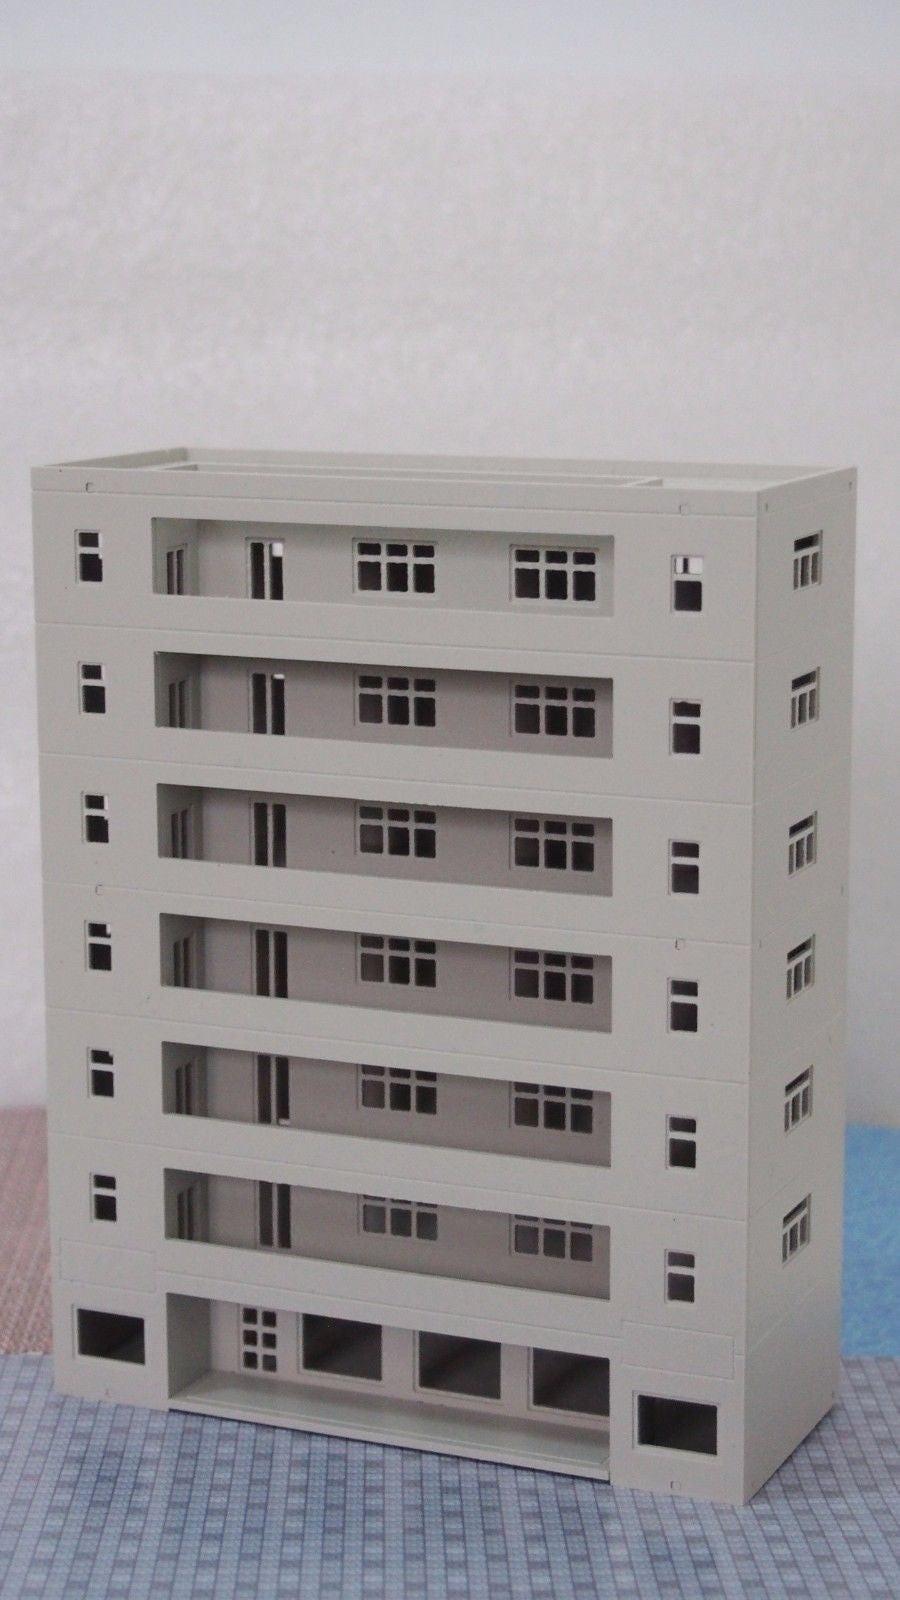 Modern Building Dormitory / School Grey N Scale 1:160 Outland Models Railway